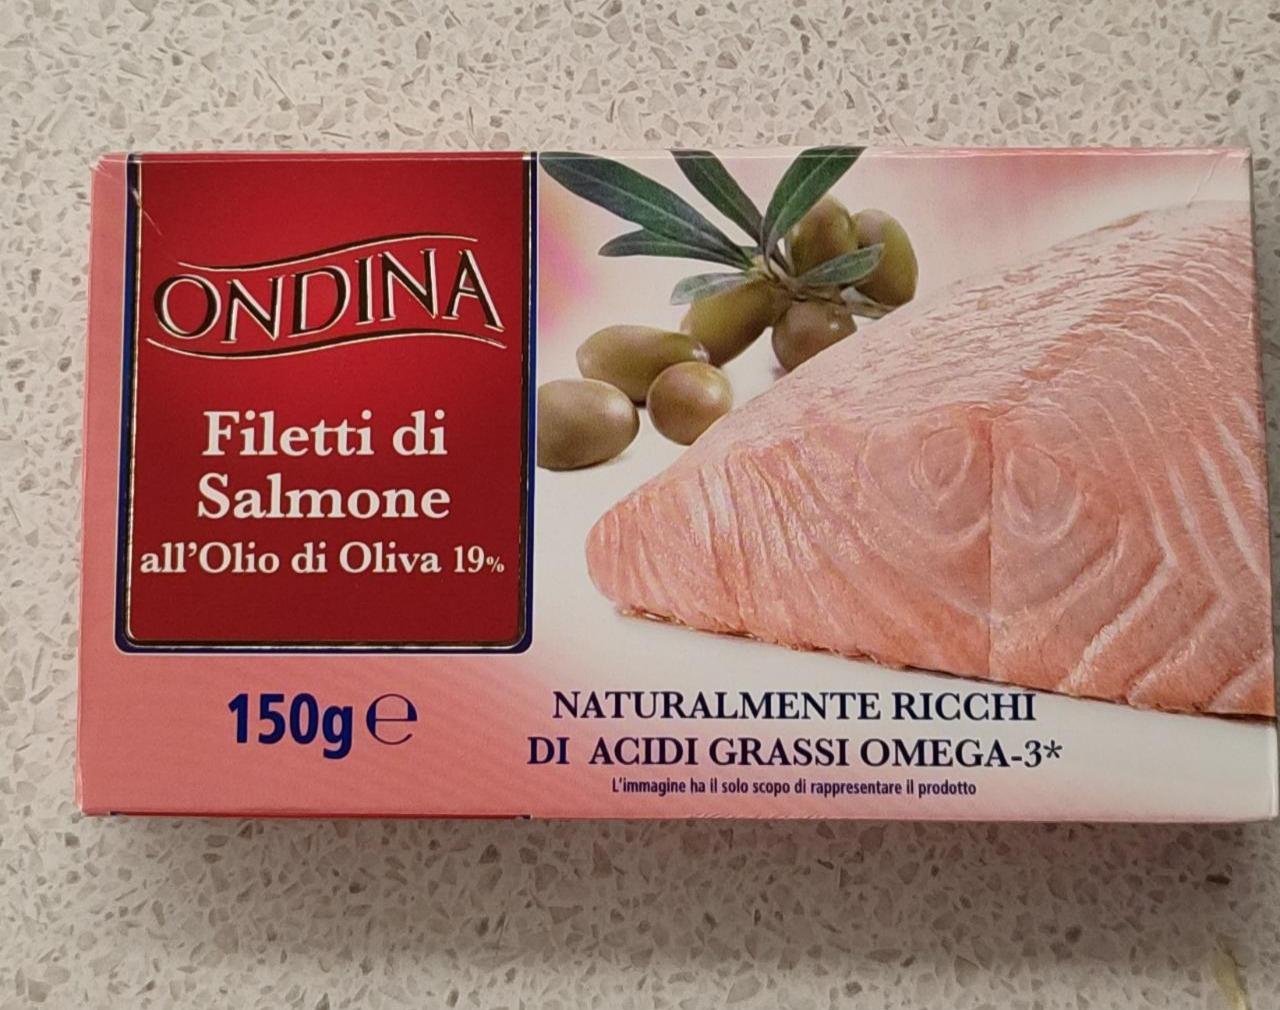 Fotografie - Filetti di salmone all'olio di oliva Ondina